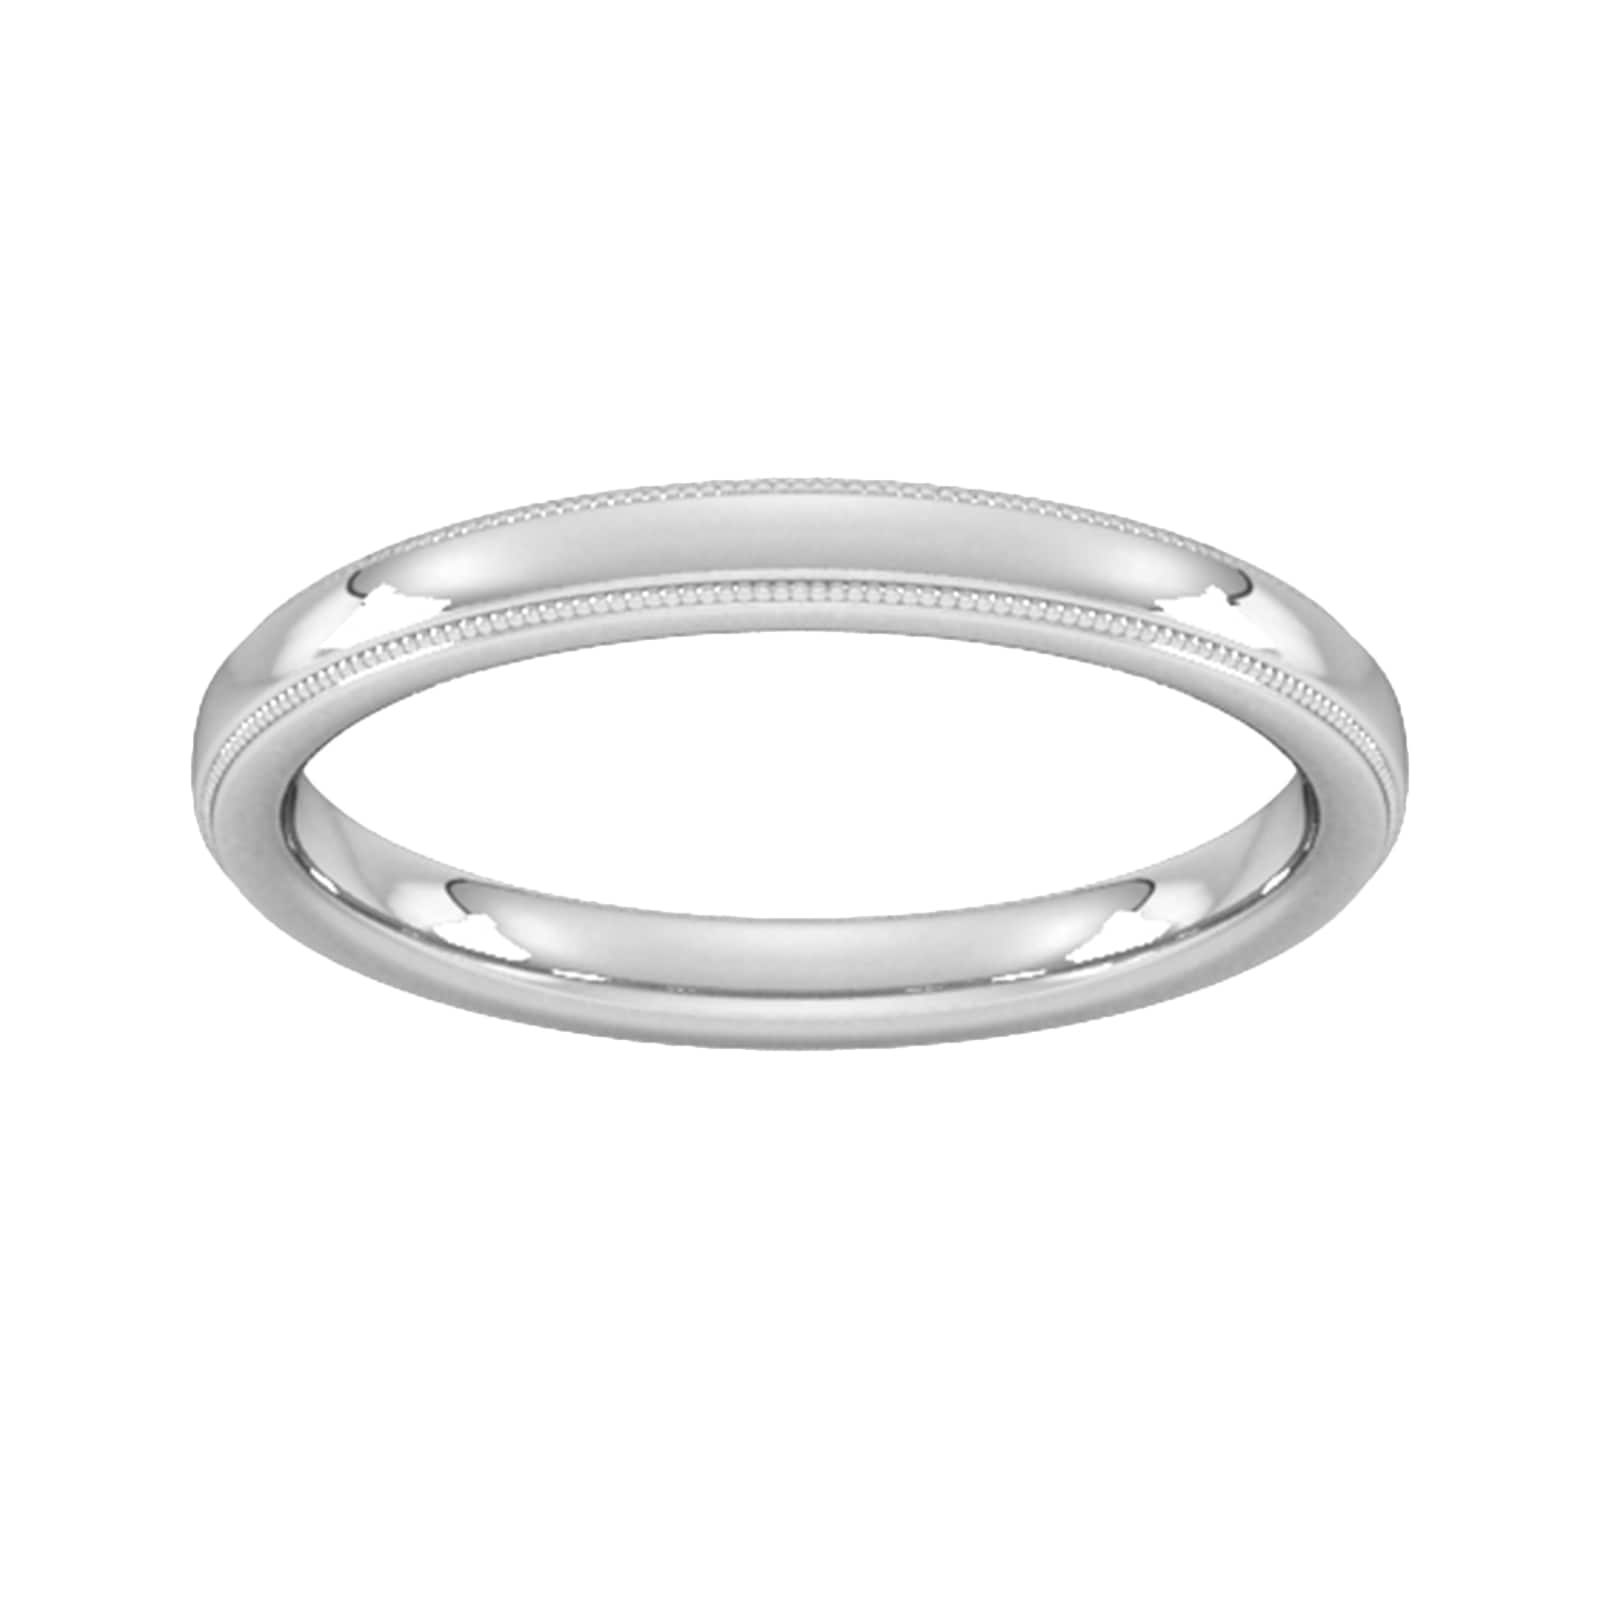 2.5mm Slight Court Heavy Milgrain Edge Wedding Ring In 18 Carat White Gold - Ring Size X